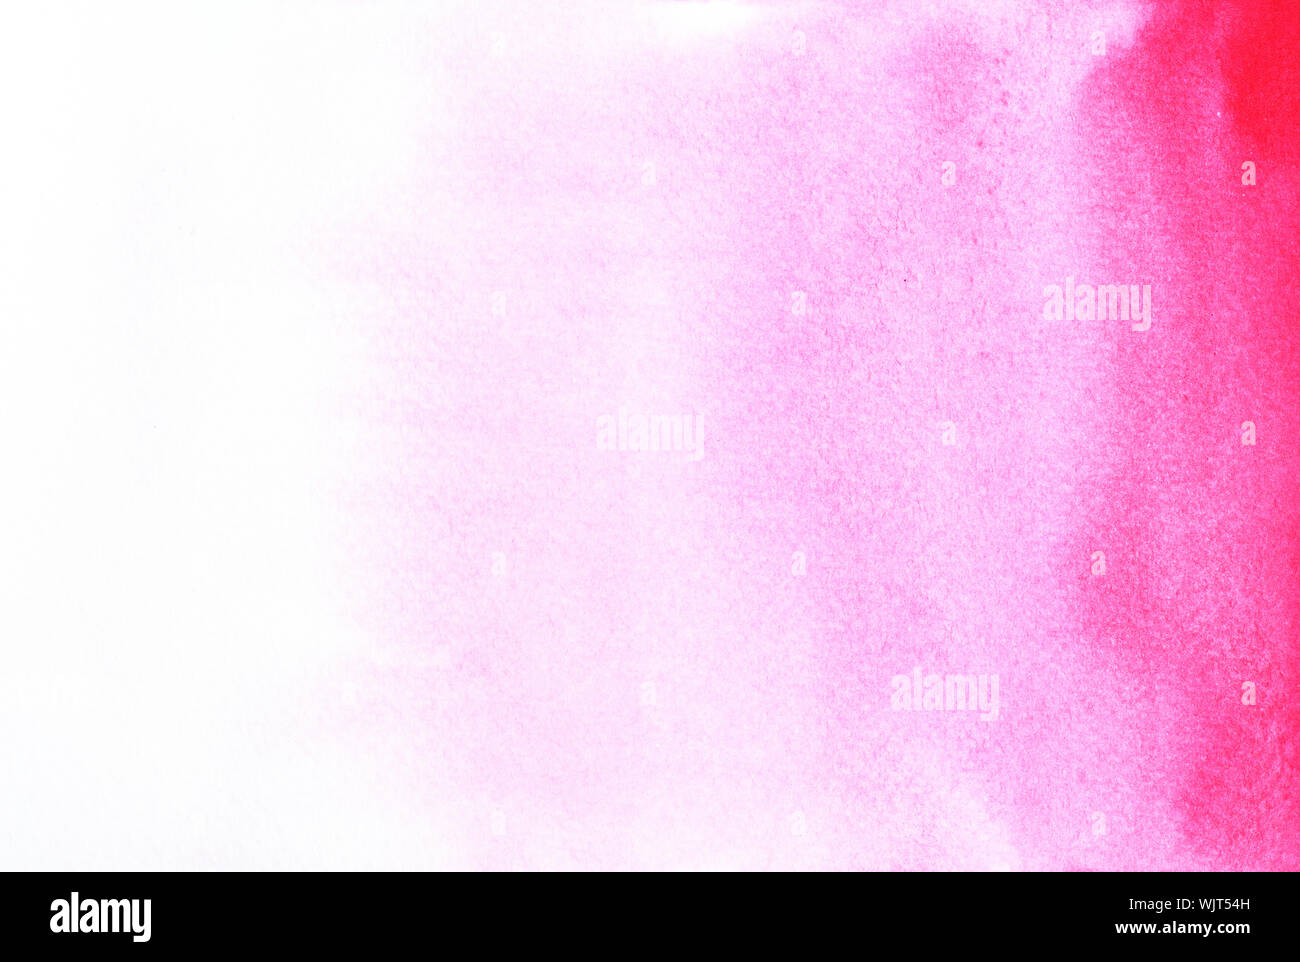 Degradado de color oscuro a claro , Rojo y manchas de color rosa en la superficie blanca de flujo , Ilustración abstractas y fondo brillante de acuarela Foto de stock